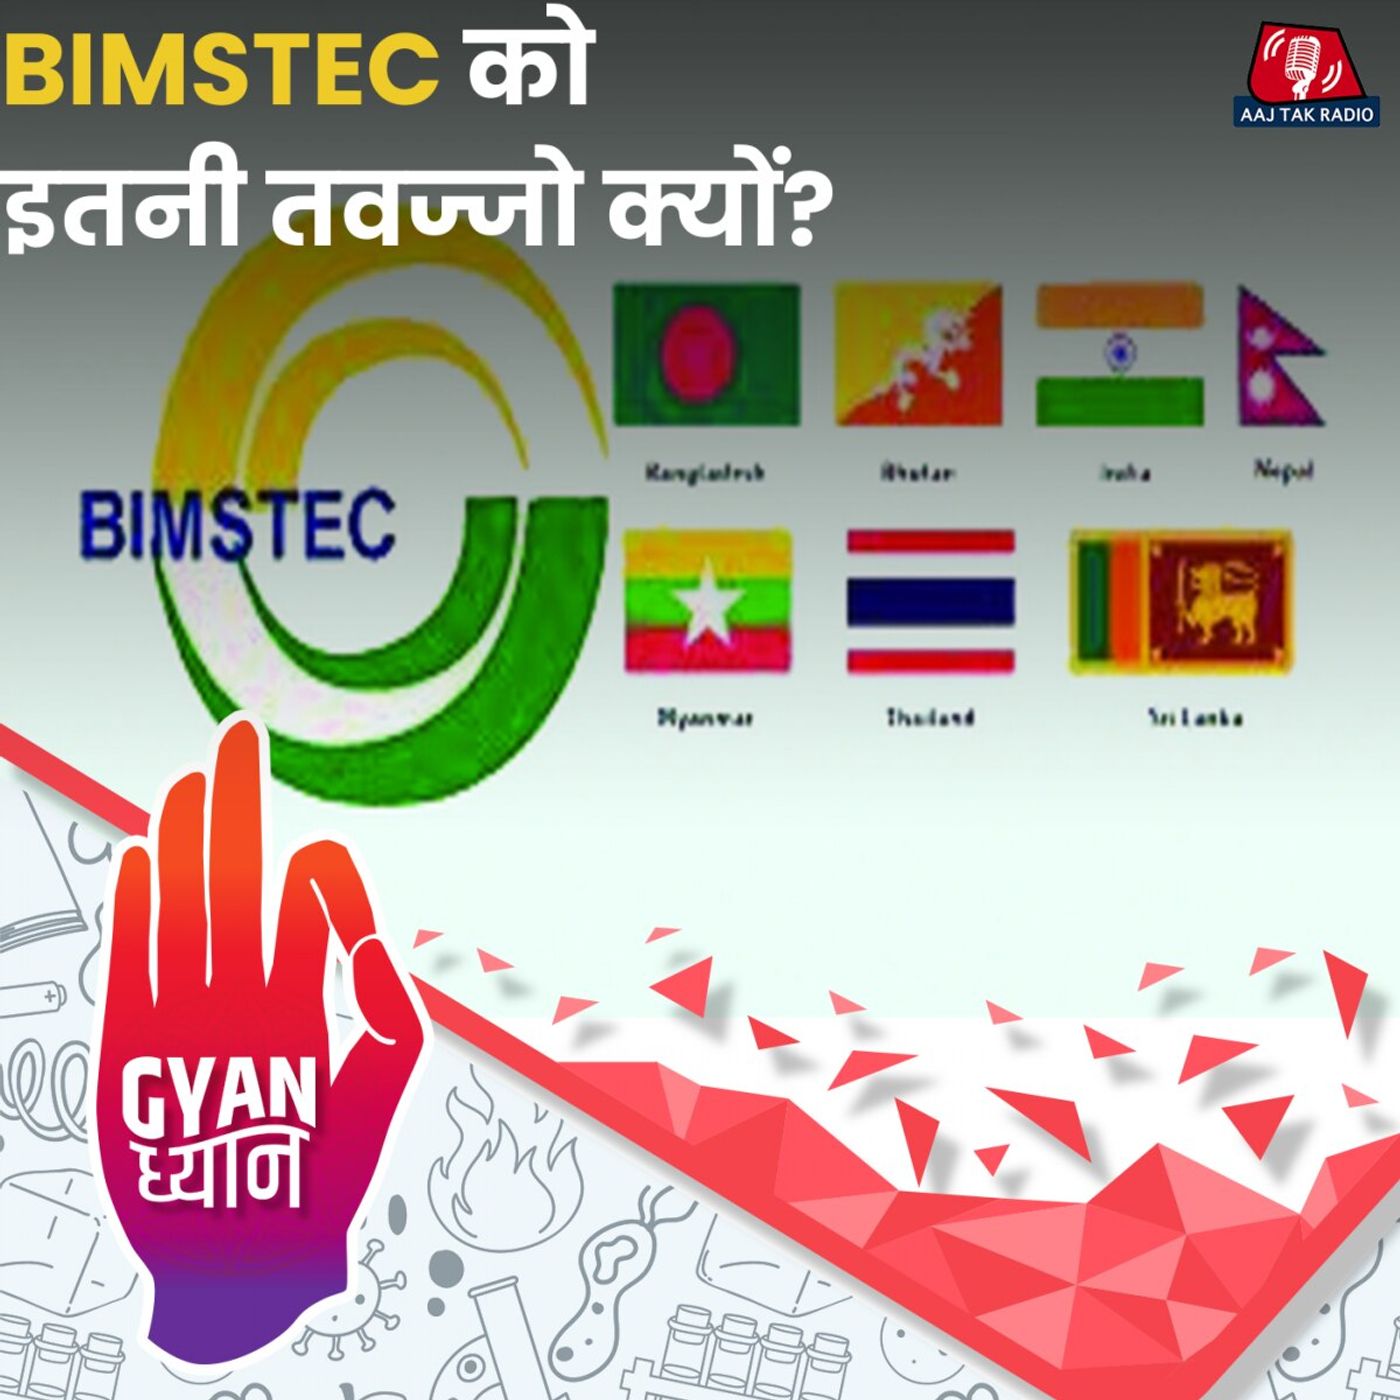 इंडिया को कैसे स्ट्रॉन्ग कर रहा है BIMSTEC?: ज्ञान ध्यान Ep 951